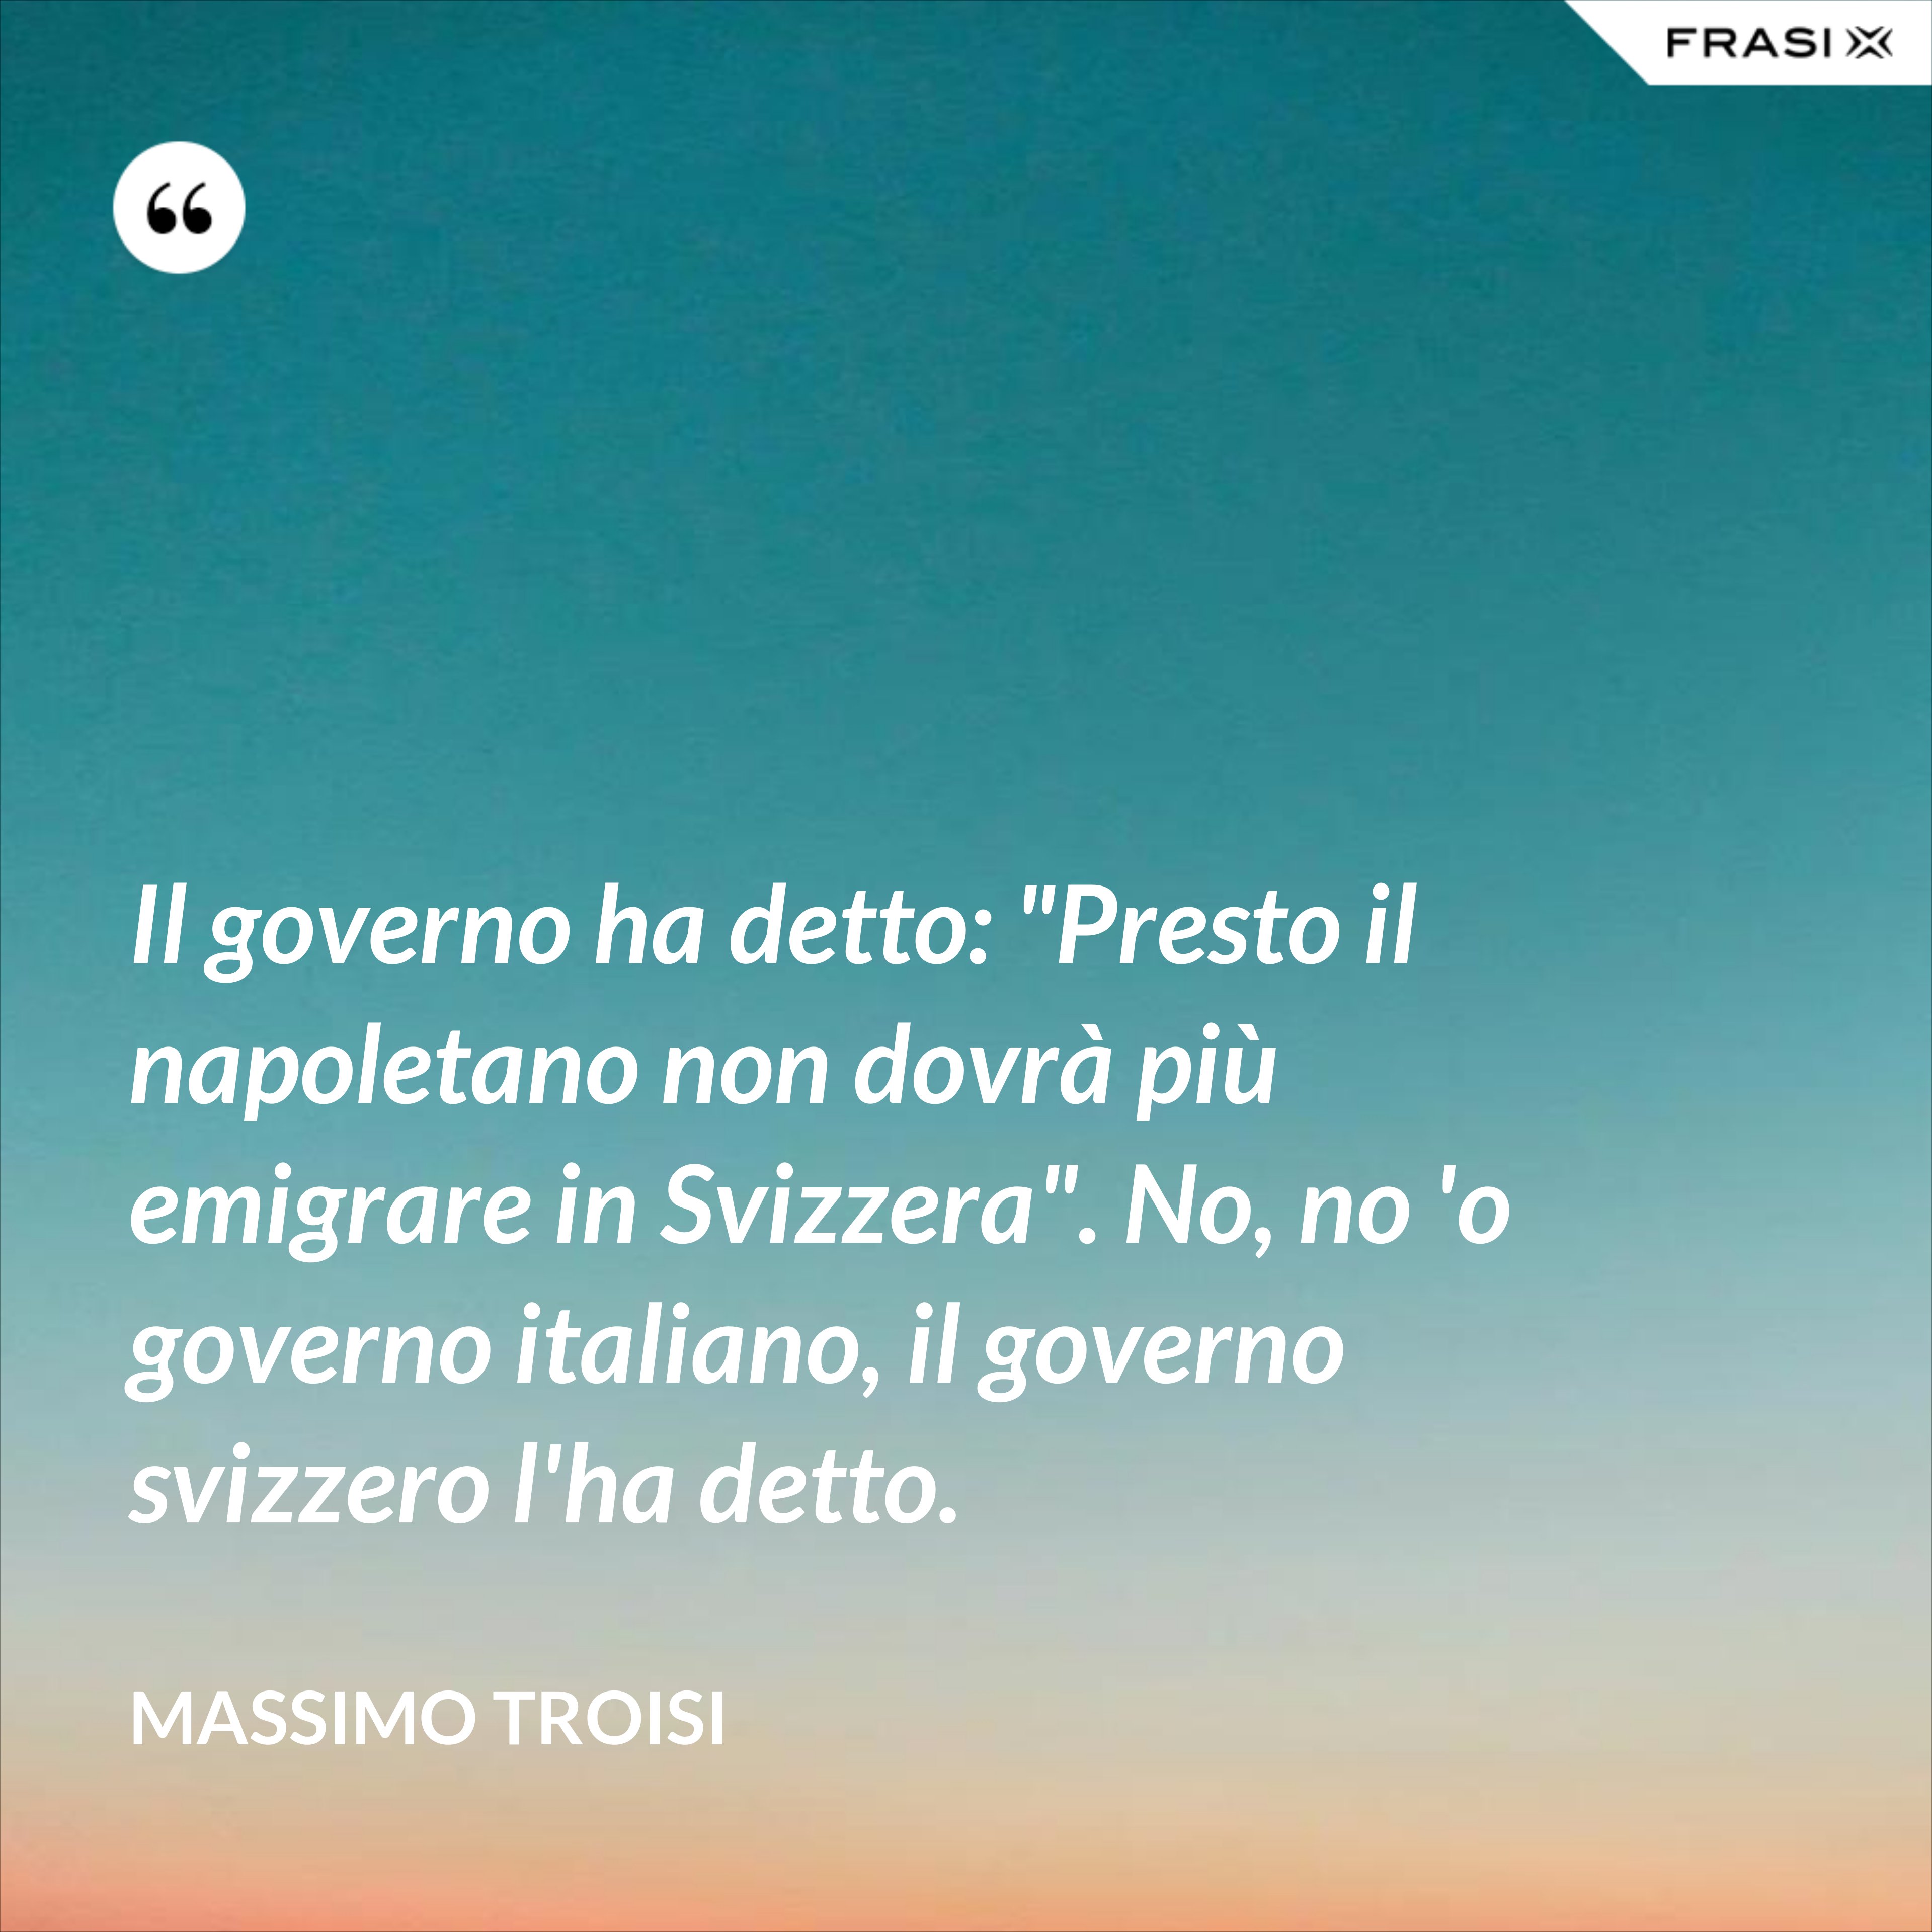 Il governo ha detto: "Presto il napoletano non dovrà più emigrare in Svizzera". No, no 'o governo italiano, il governo svizzero l'ha detto. - Massimo Troisi